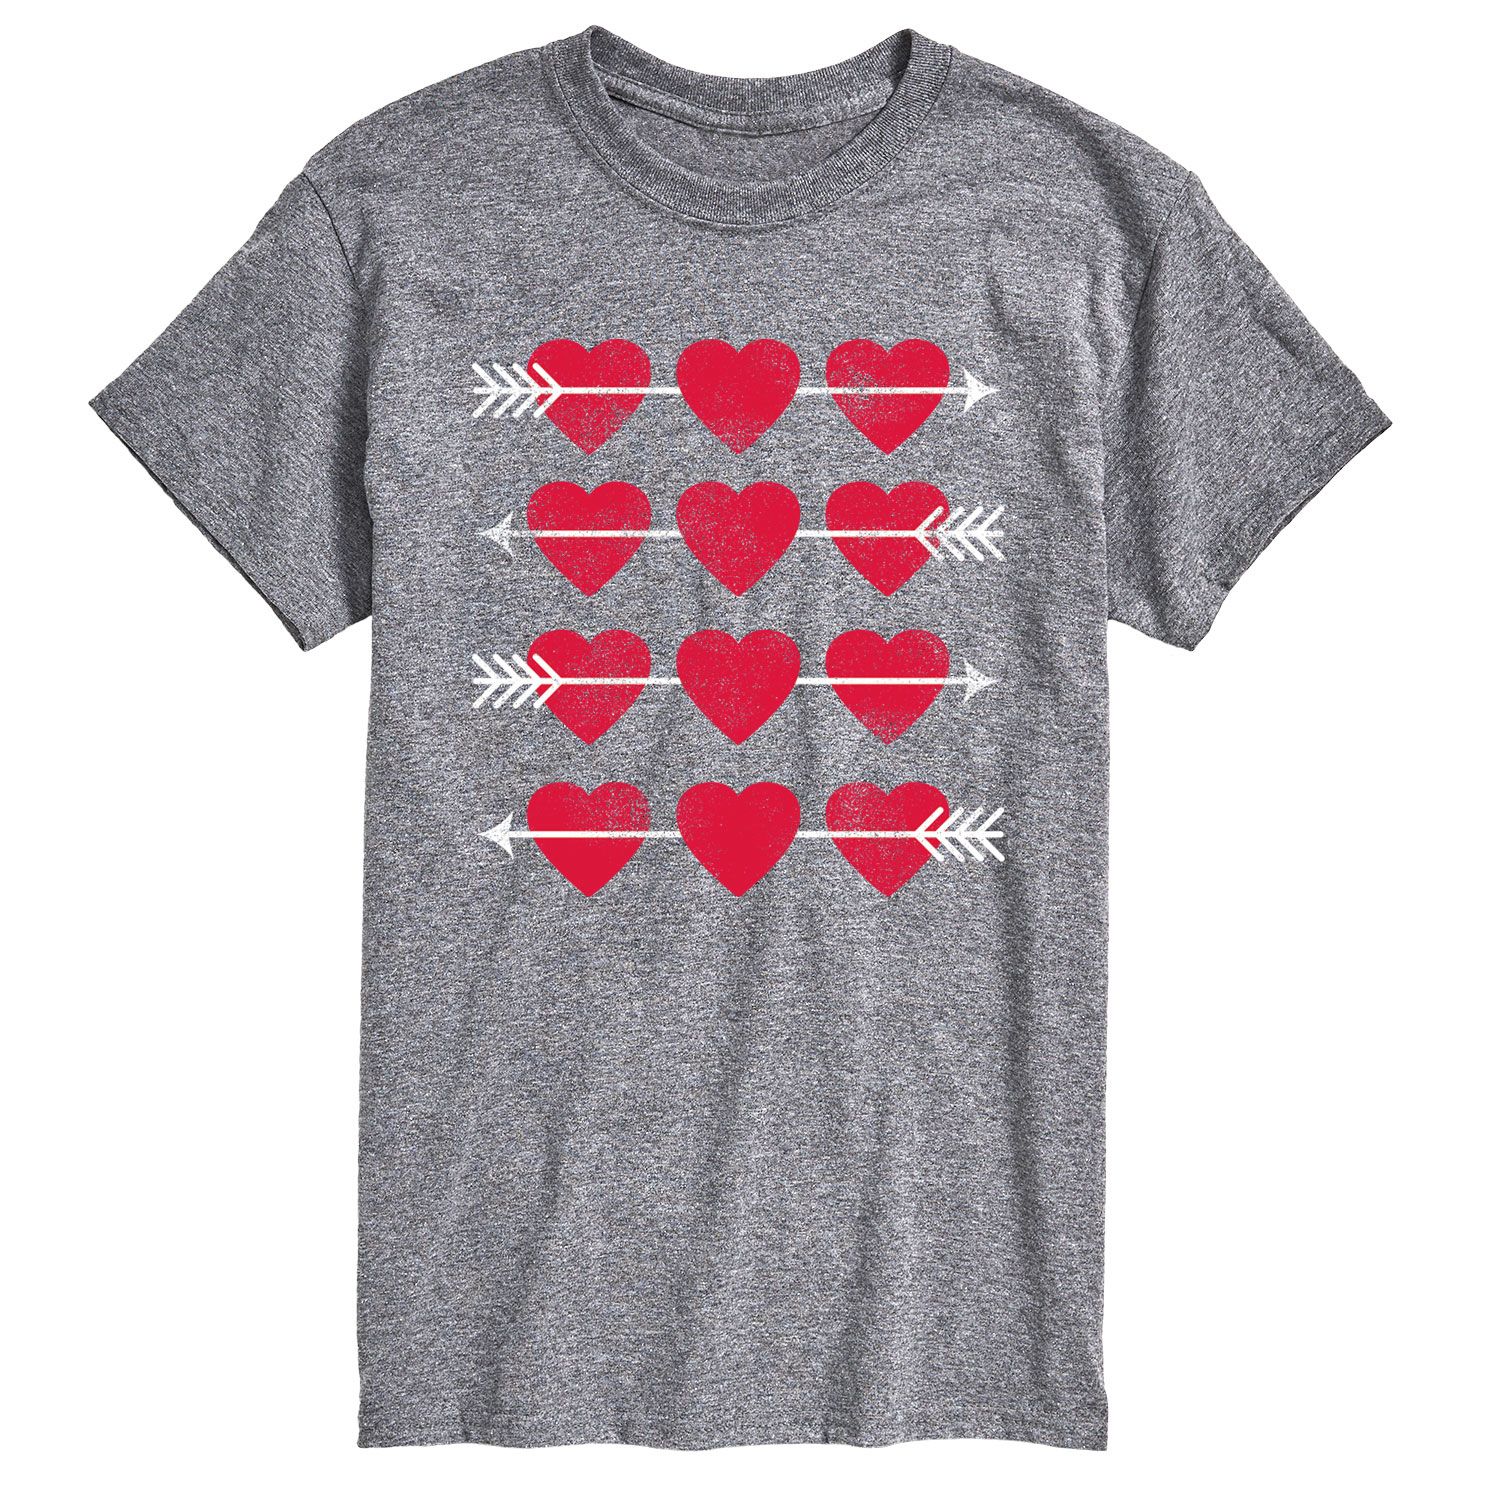 Мужская футболка с сердечками и стрелками в сетку Licensed Character колготки в сетку с сердечками